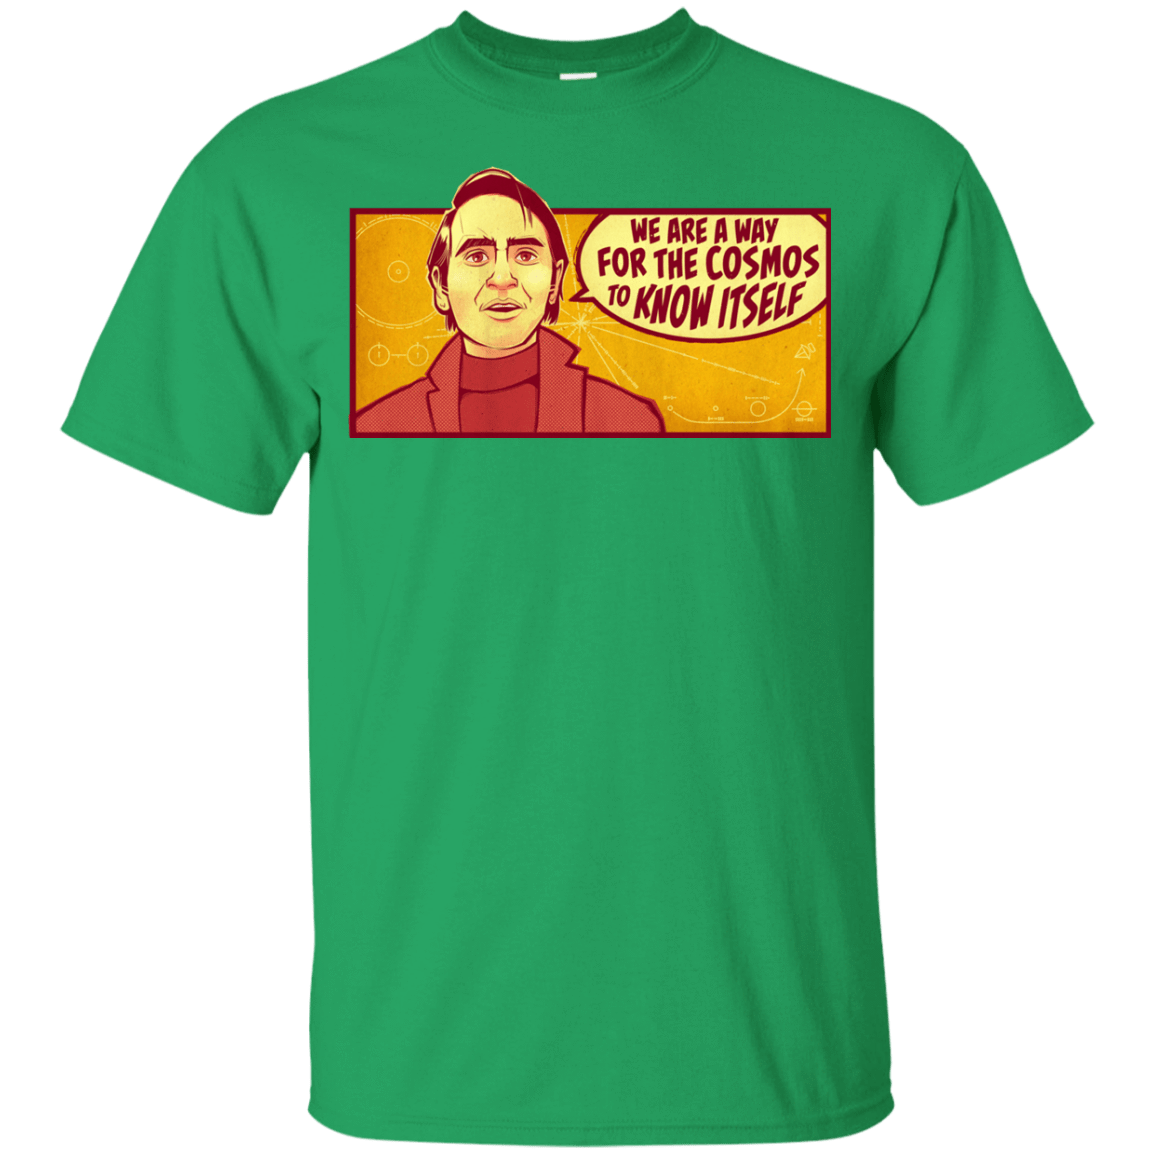 T-Shirts Irish Green / YXS SAGAN Cosmos Youth T-Shirt